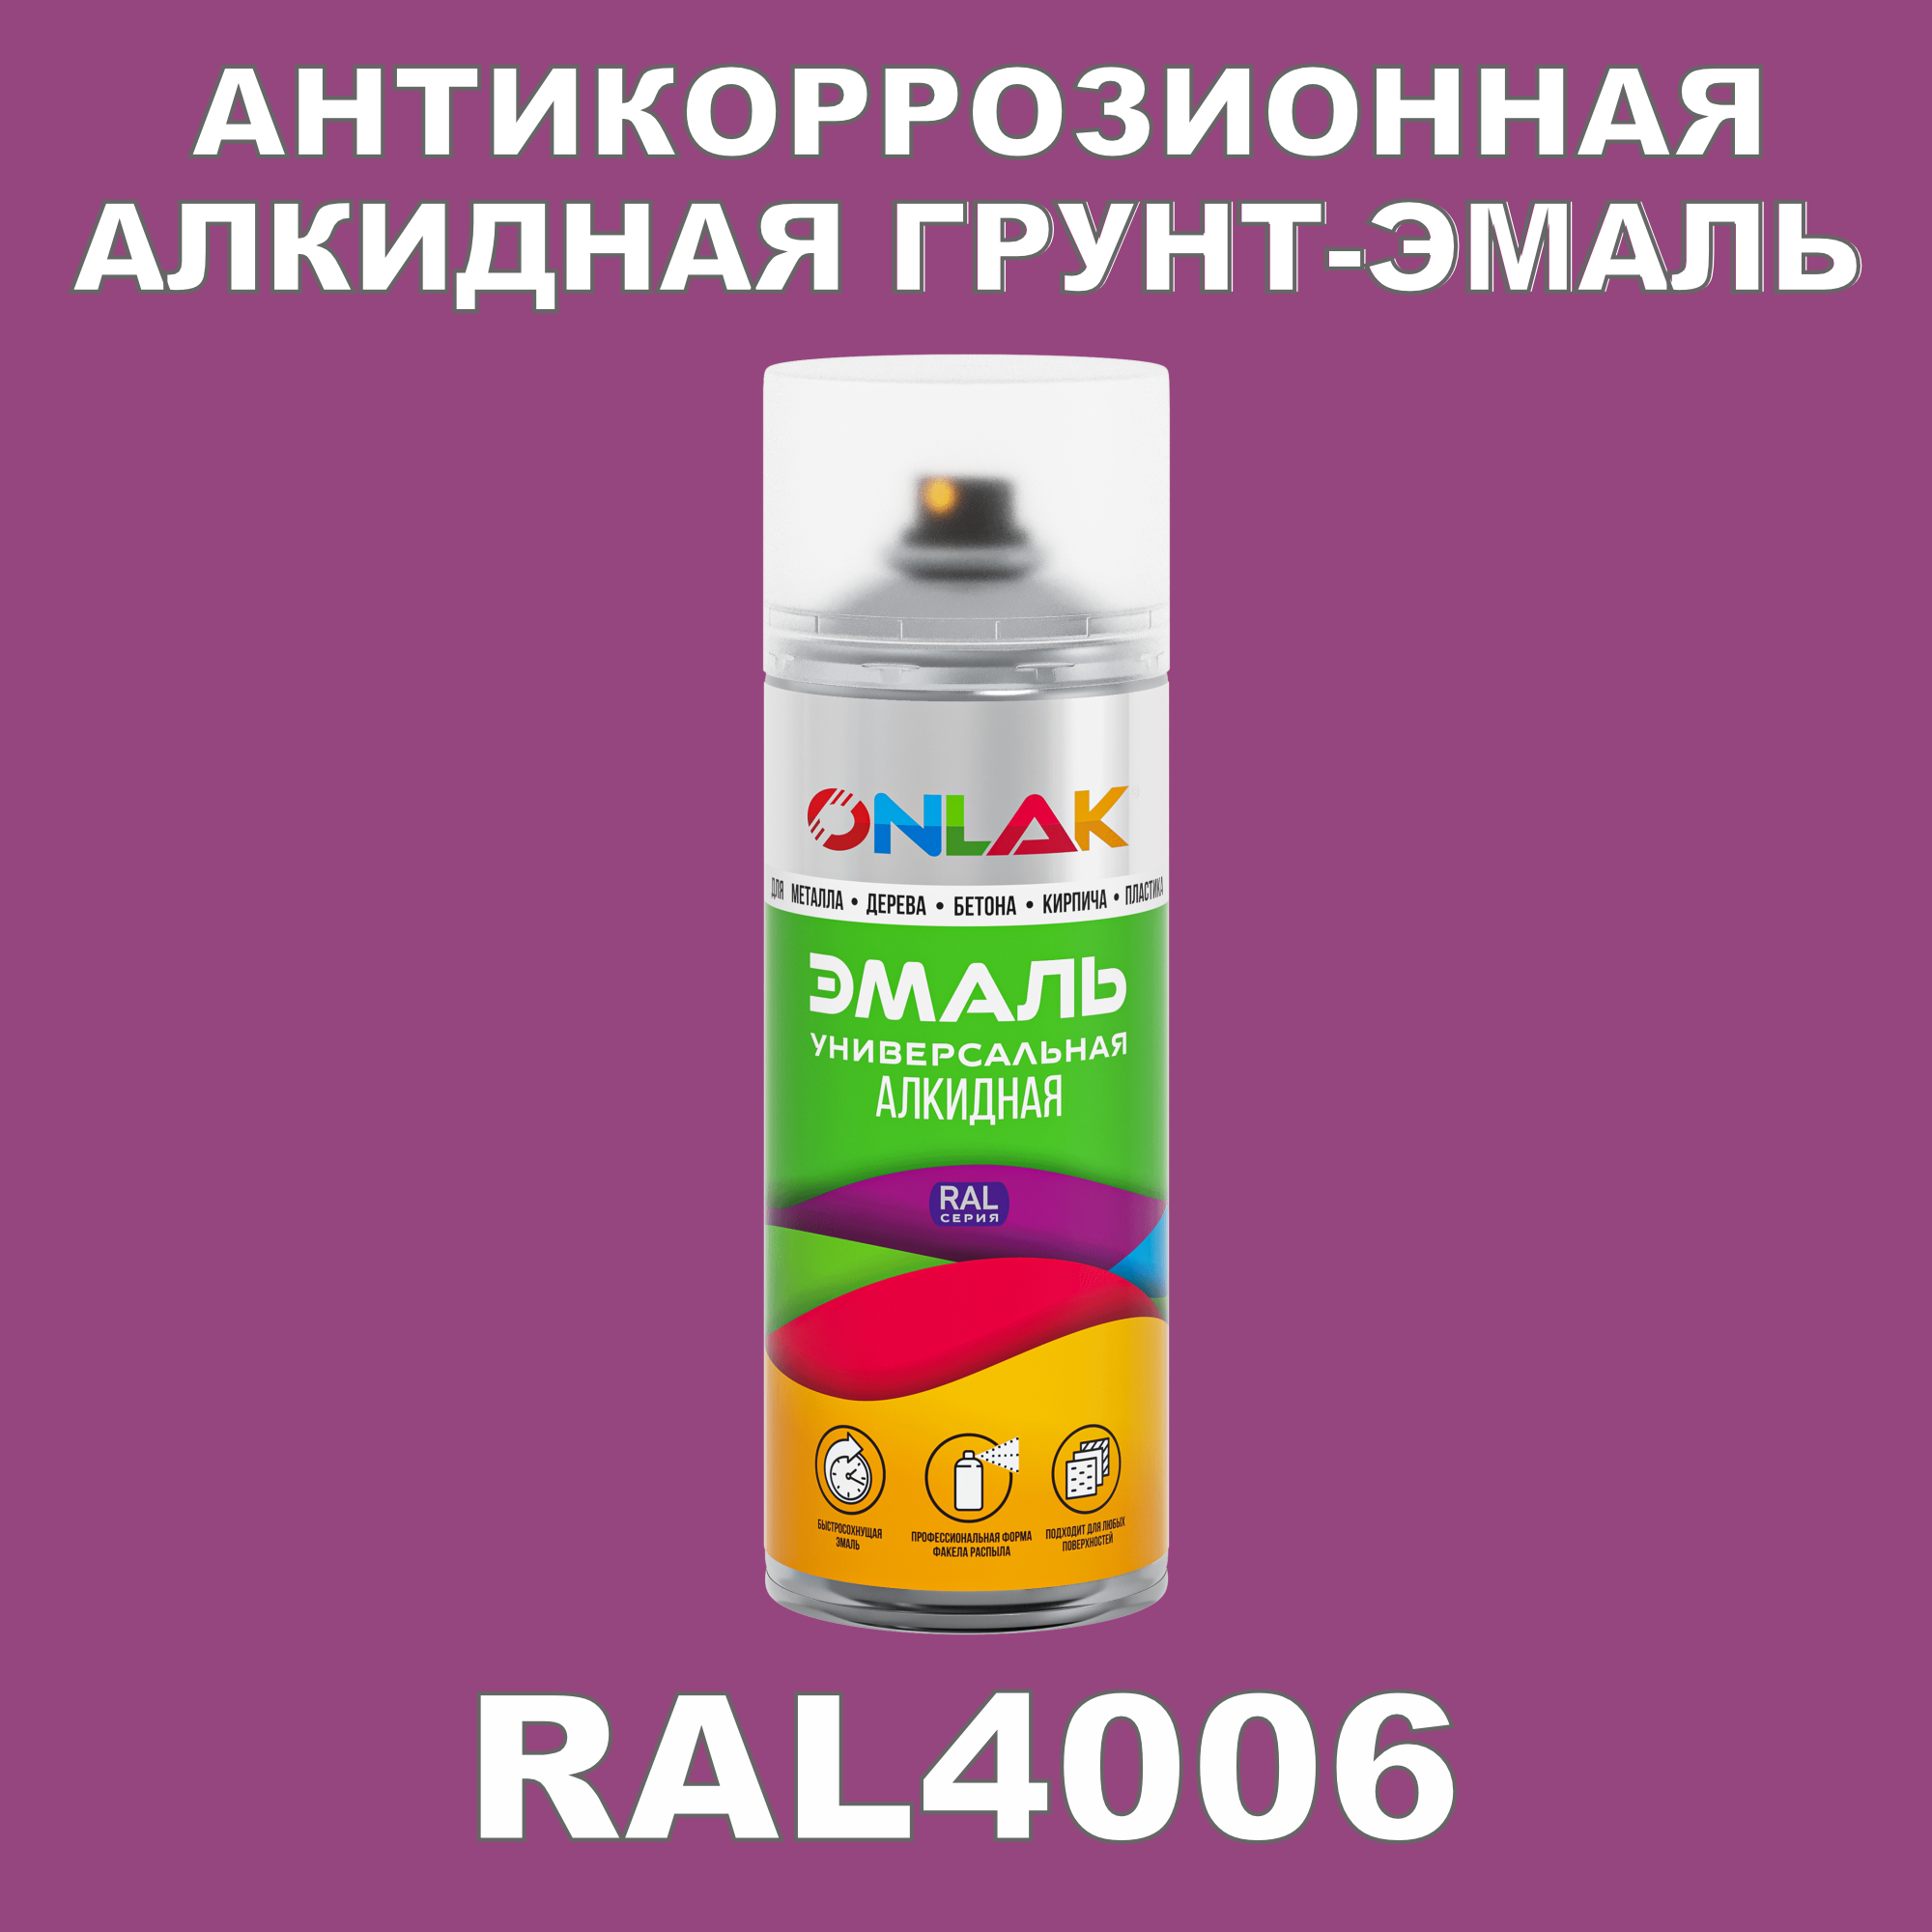 Антикоррозионная грунт-эмаль ONLAK RAL 4006,фиолетовый,682 мл